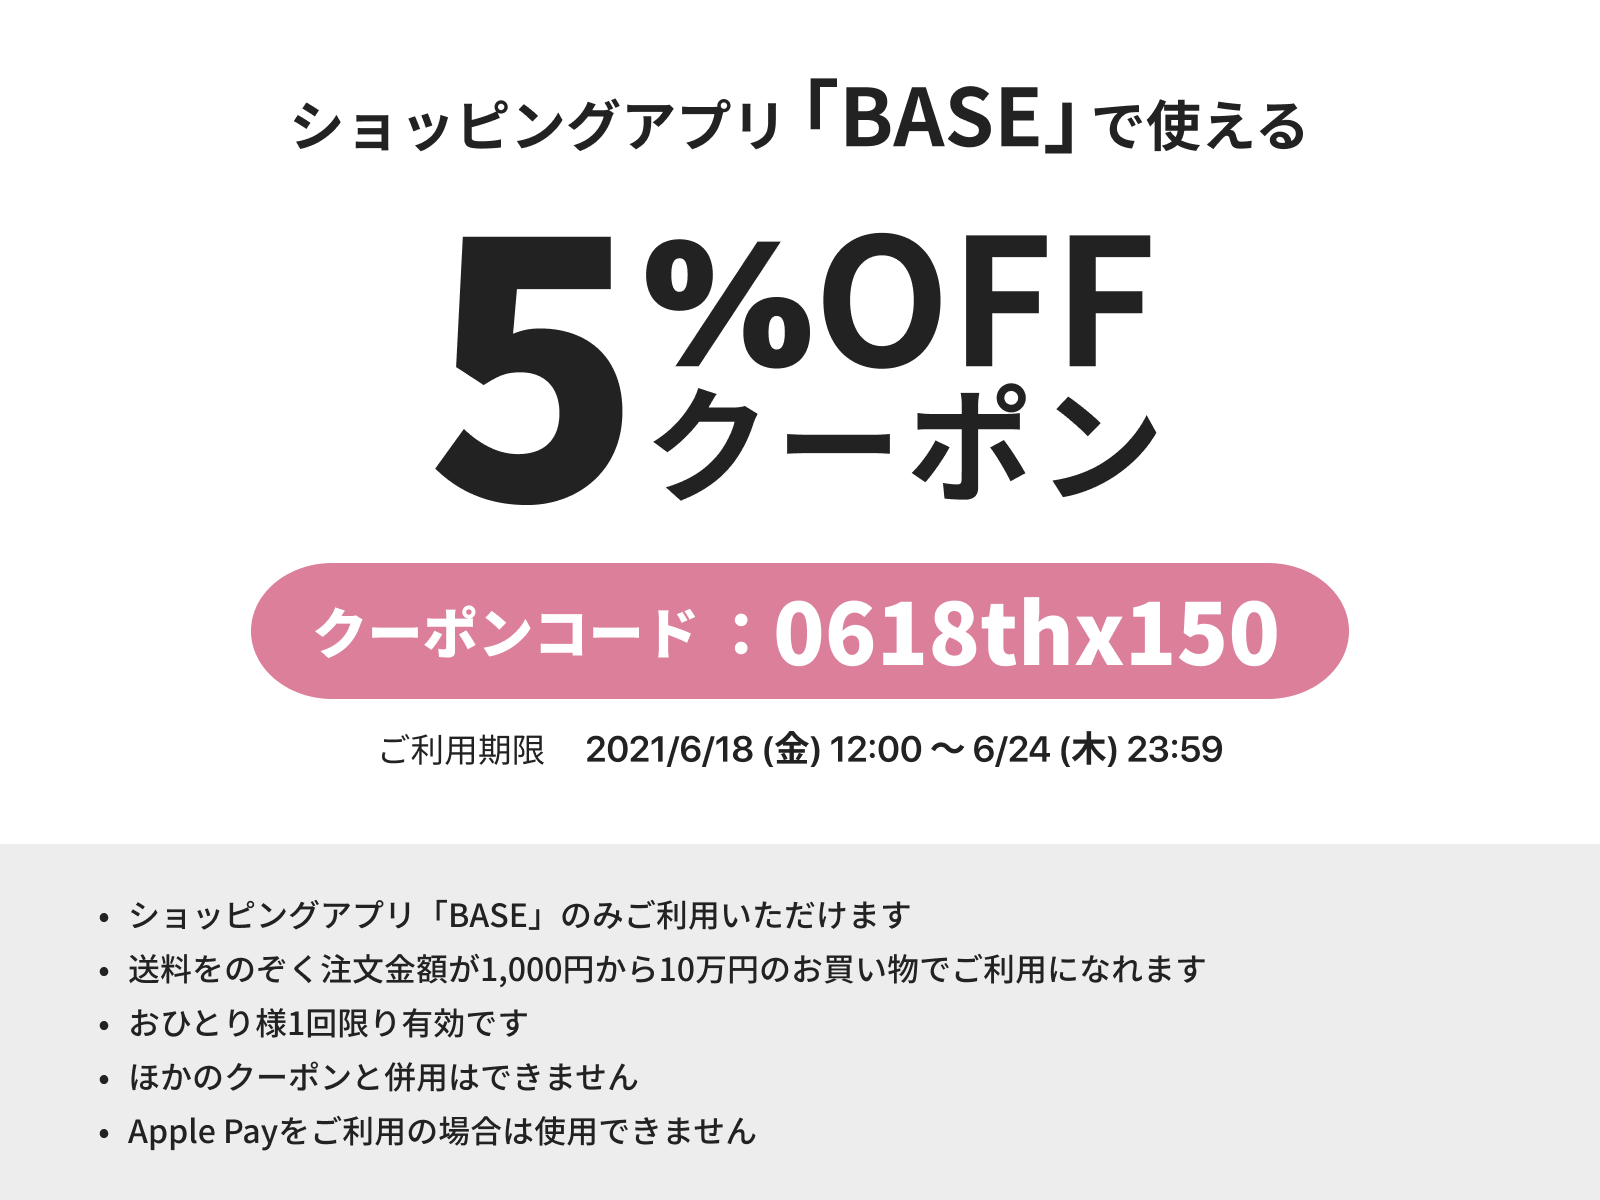 【BASE】5%offクーポンのお知らせ 6/24迄！